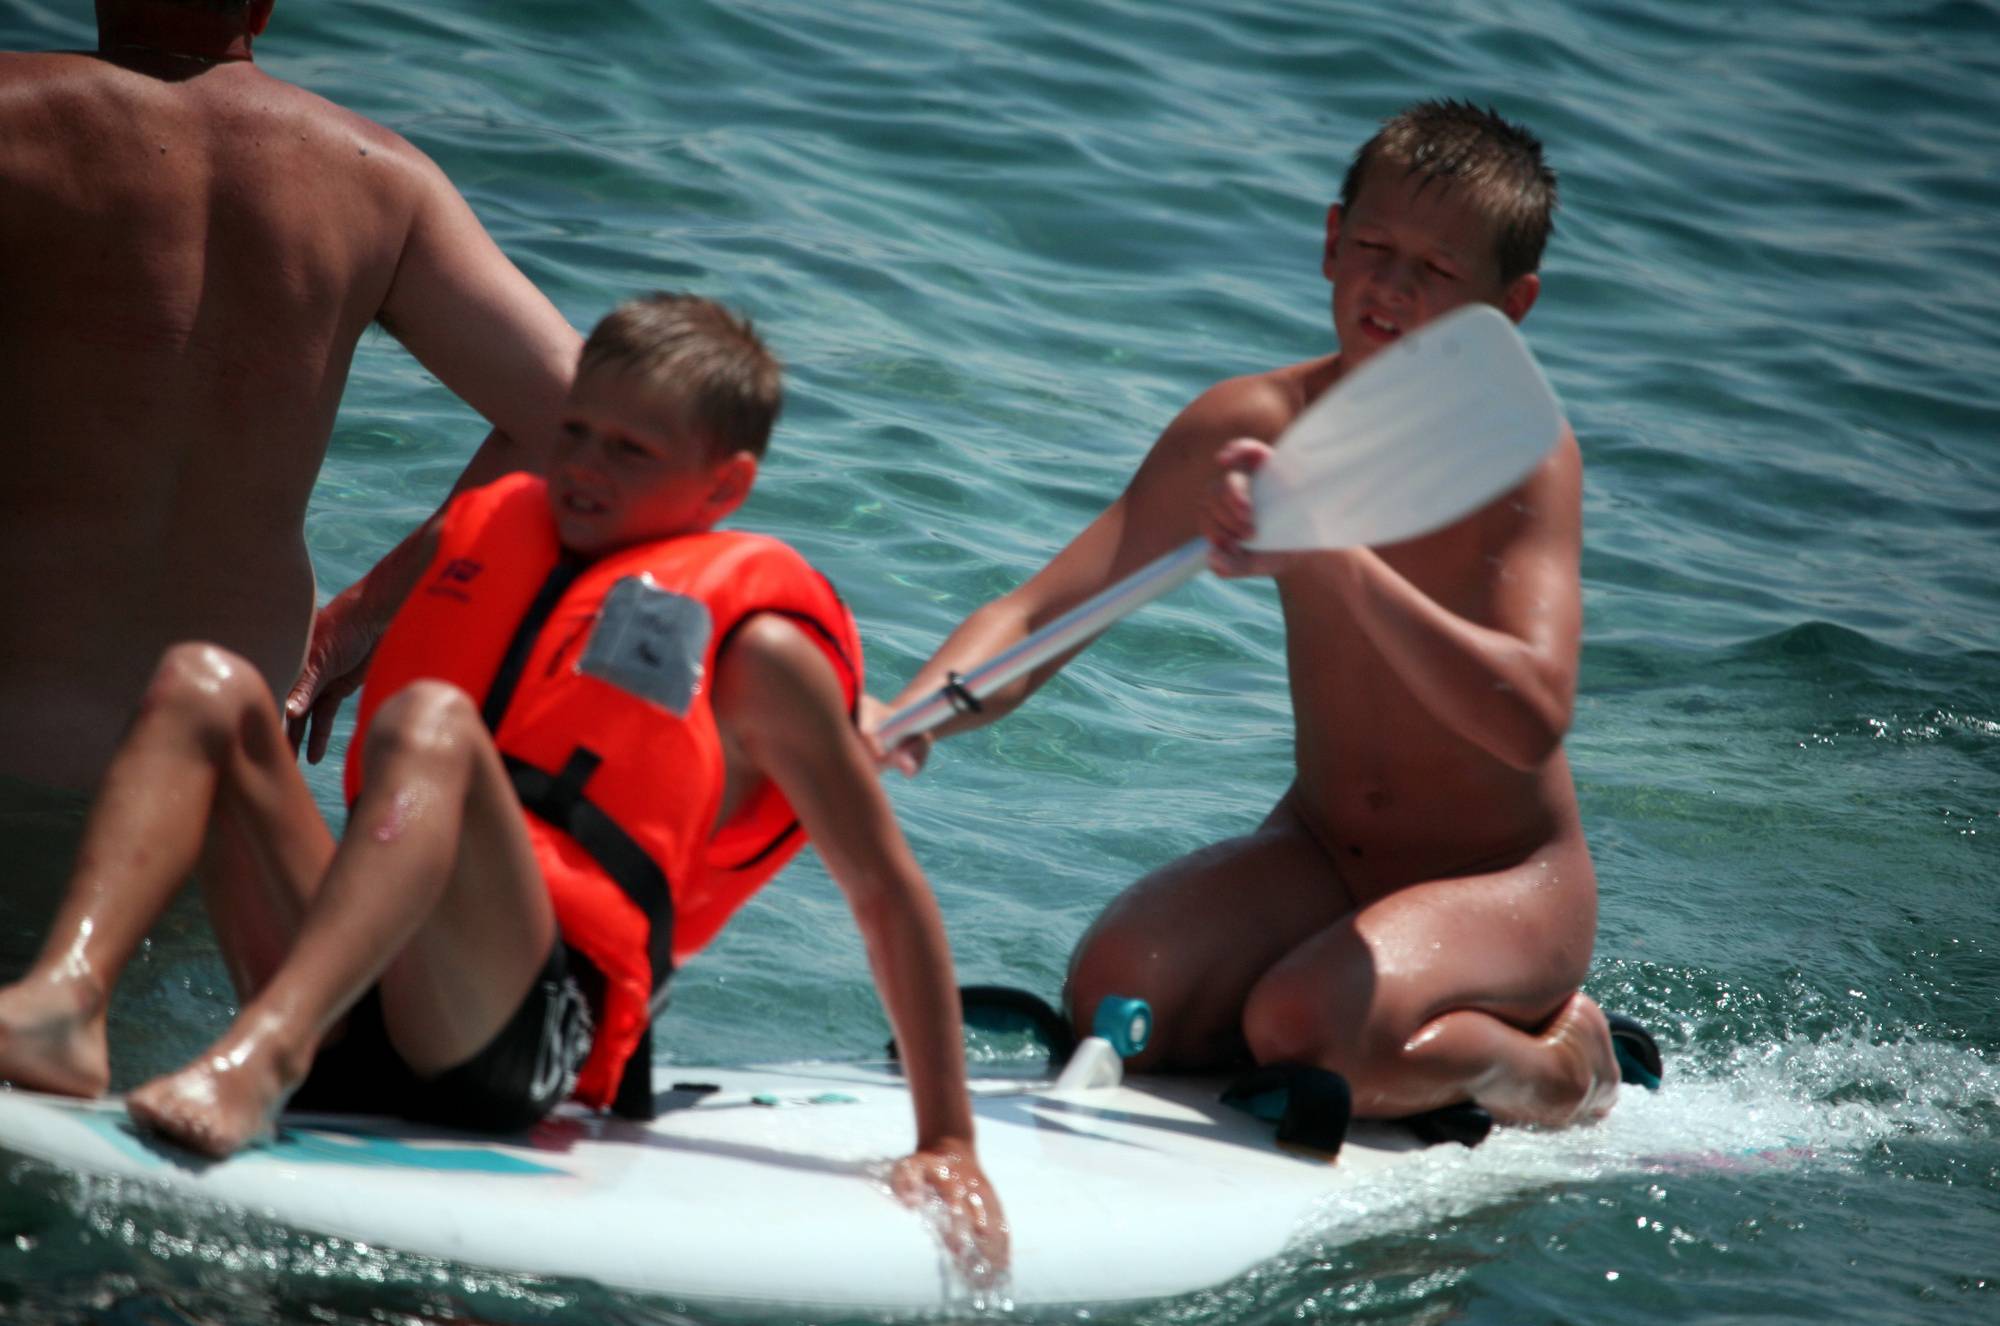 Nudist Beach Boy Surfing - 2